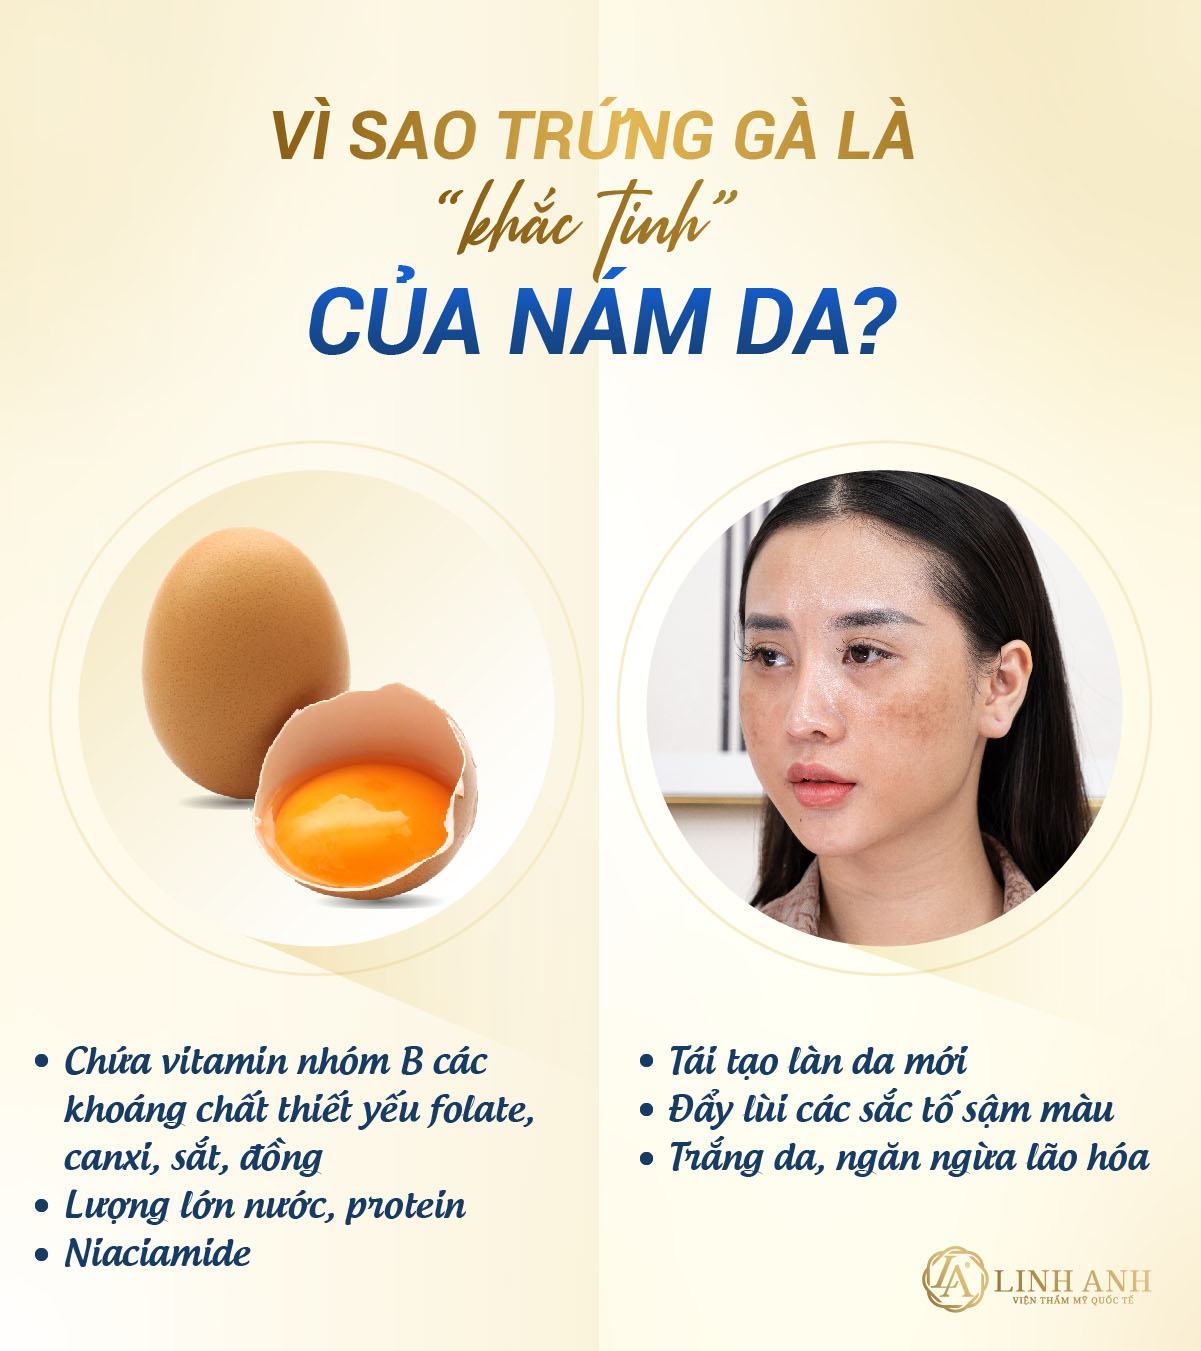 Mặt nạ trị nám bằng trứng gà - Viện thẩm mỹ quốc tế Linh Anh